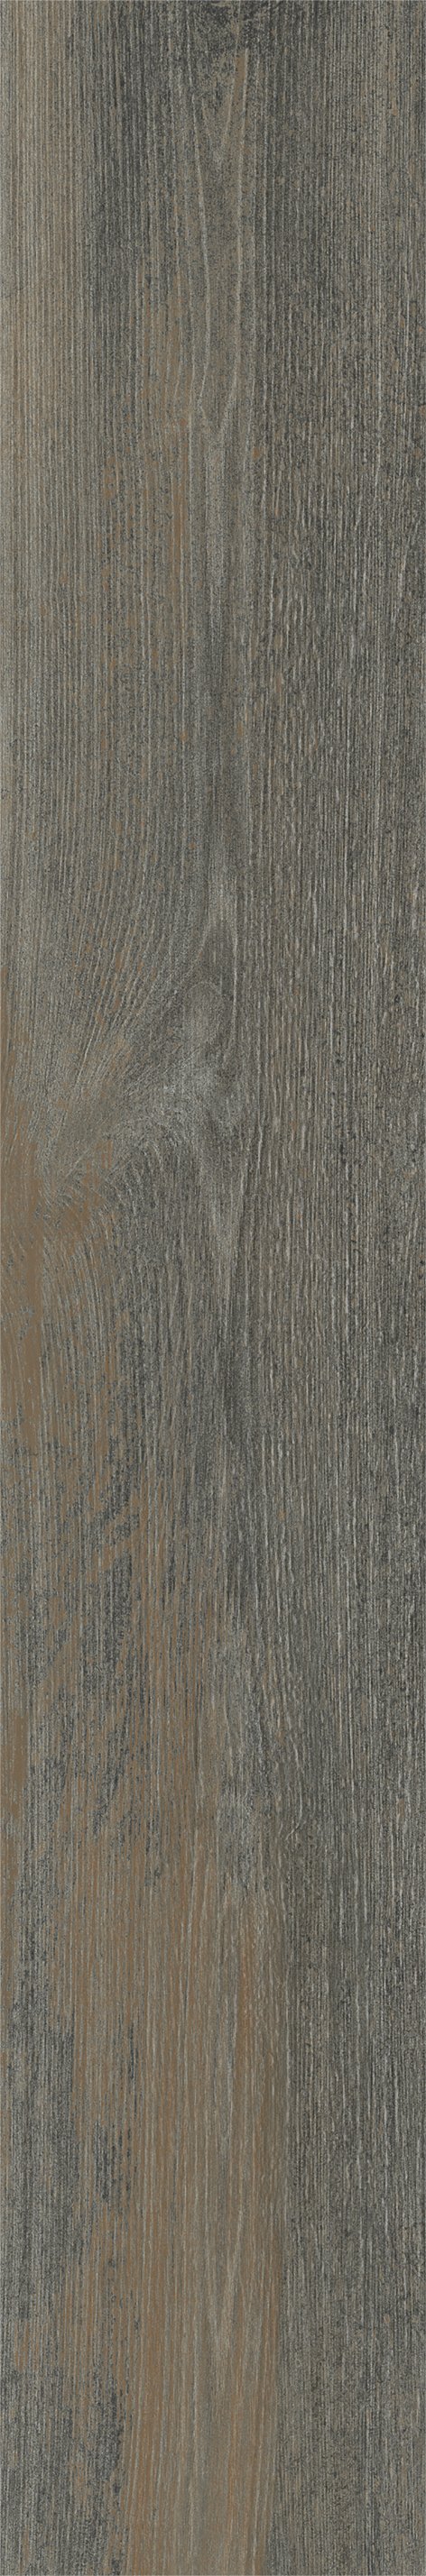 Плитка из керамогранита матовая Italon Грув 20x120 коричневый (610010001885) плитка из керамогранита матовая italon грув 20x120 коричневый 610010001884